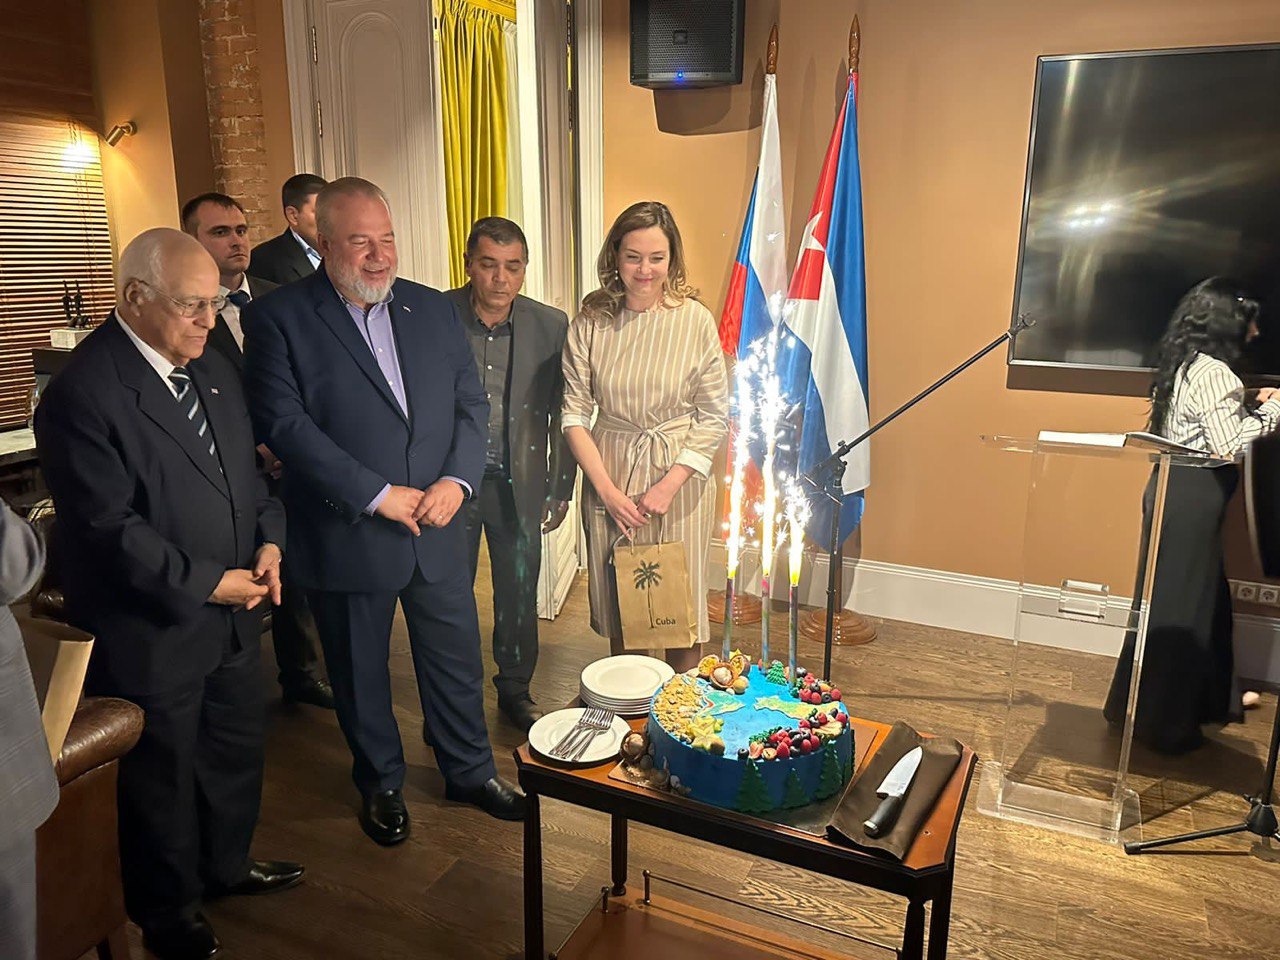 Мануэль Марерро Крус с представителями РОДК наблюдает за фейерверком из торта с изображением острова Кубы